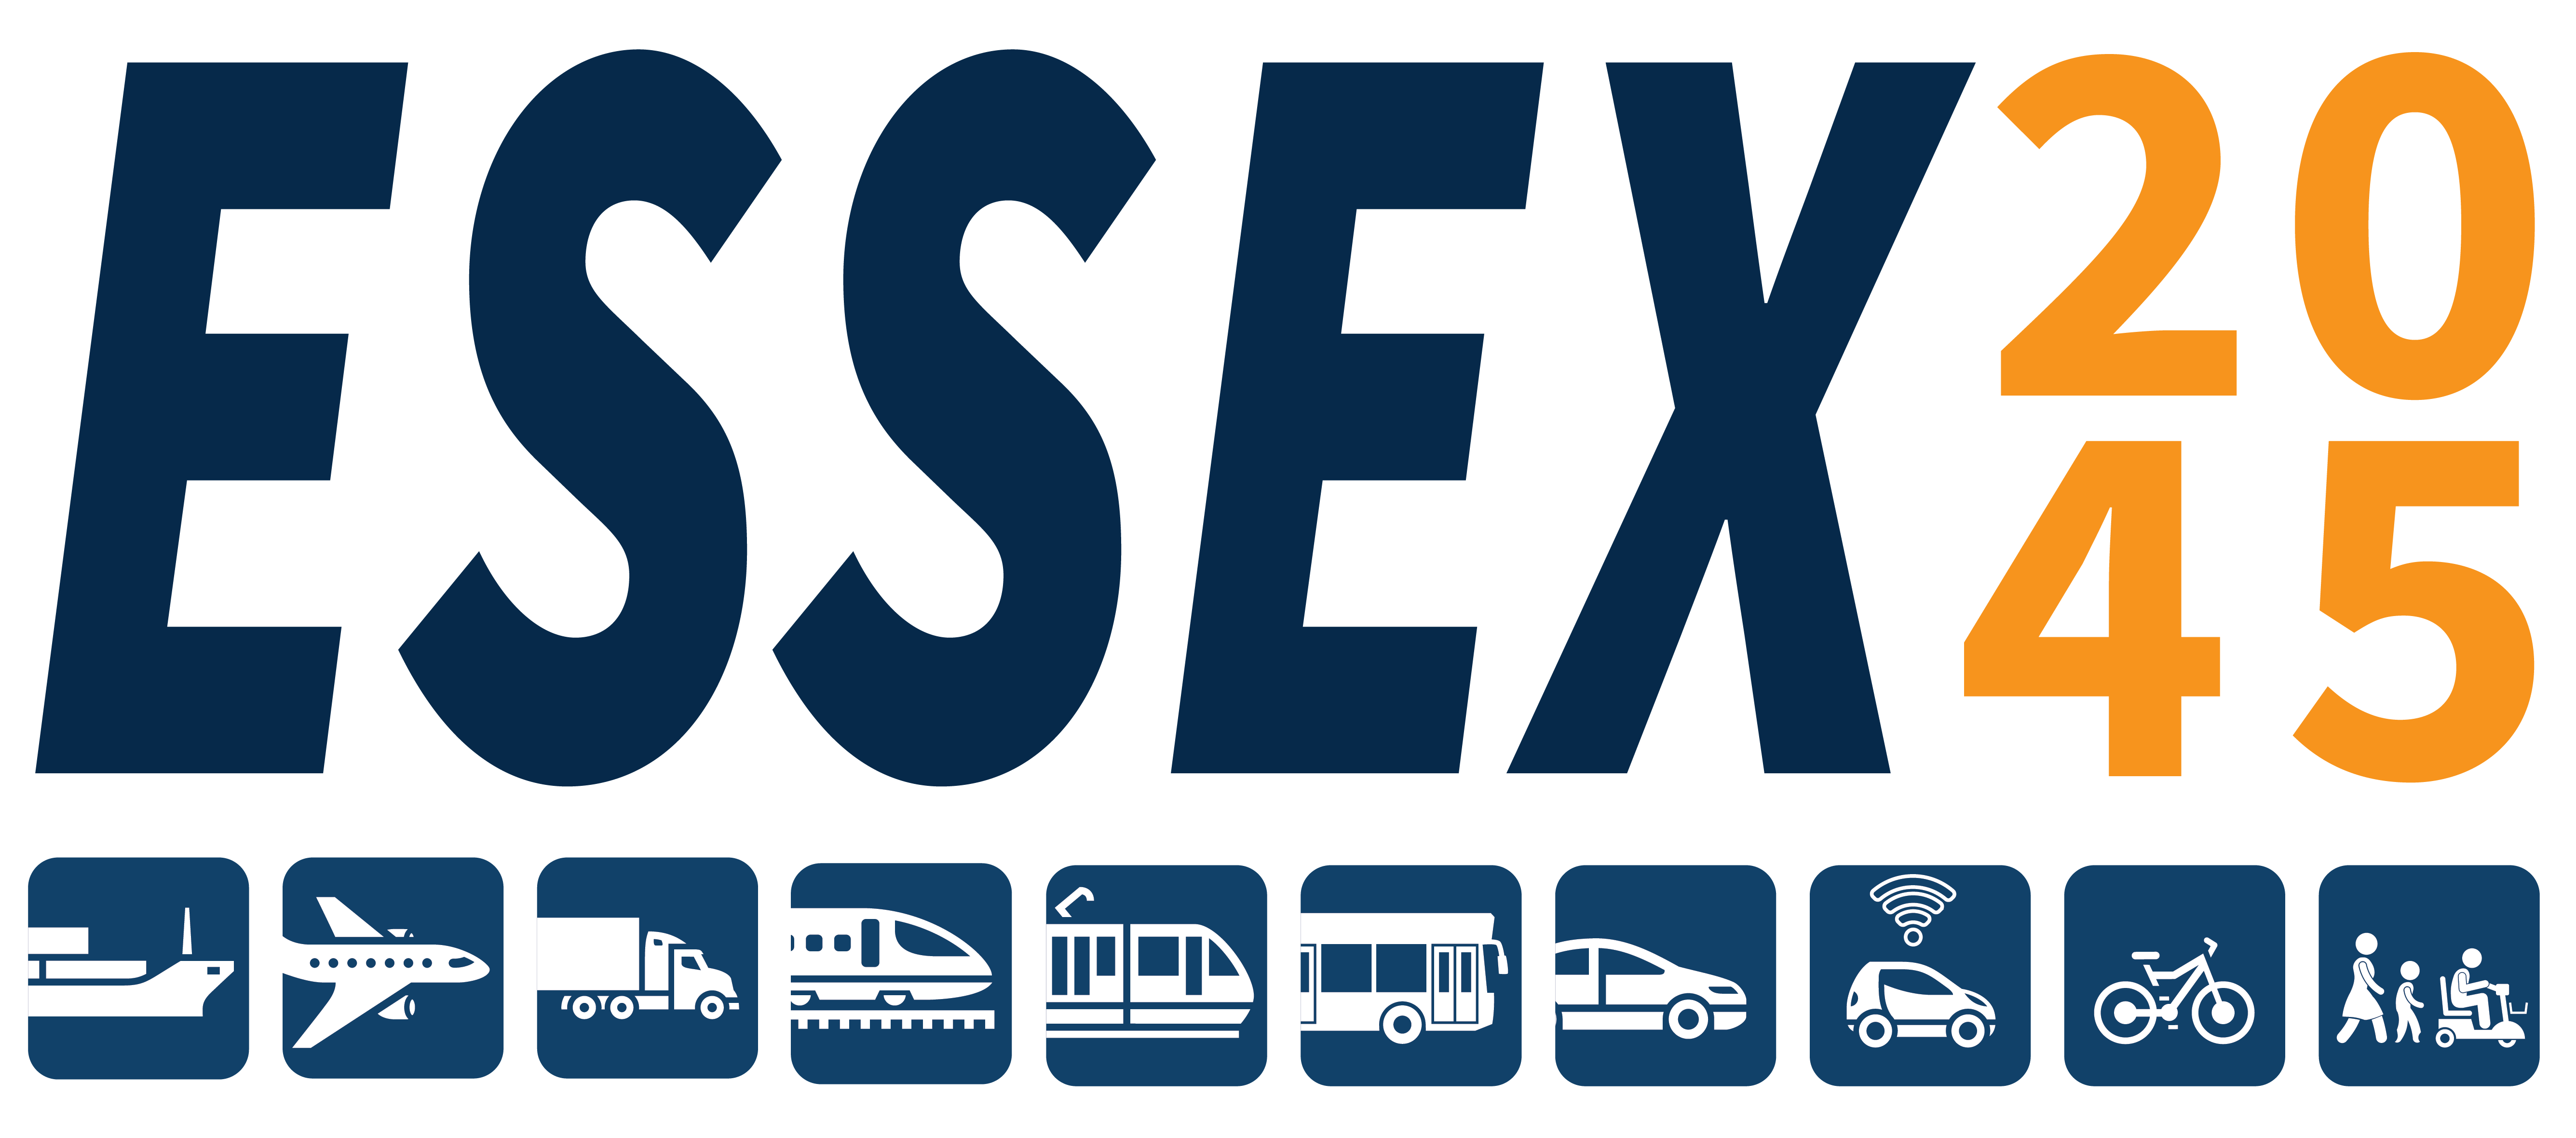 Essex 2045 Banner